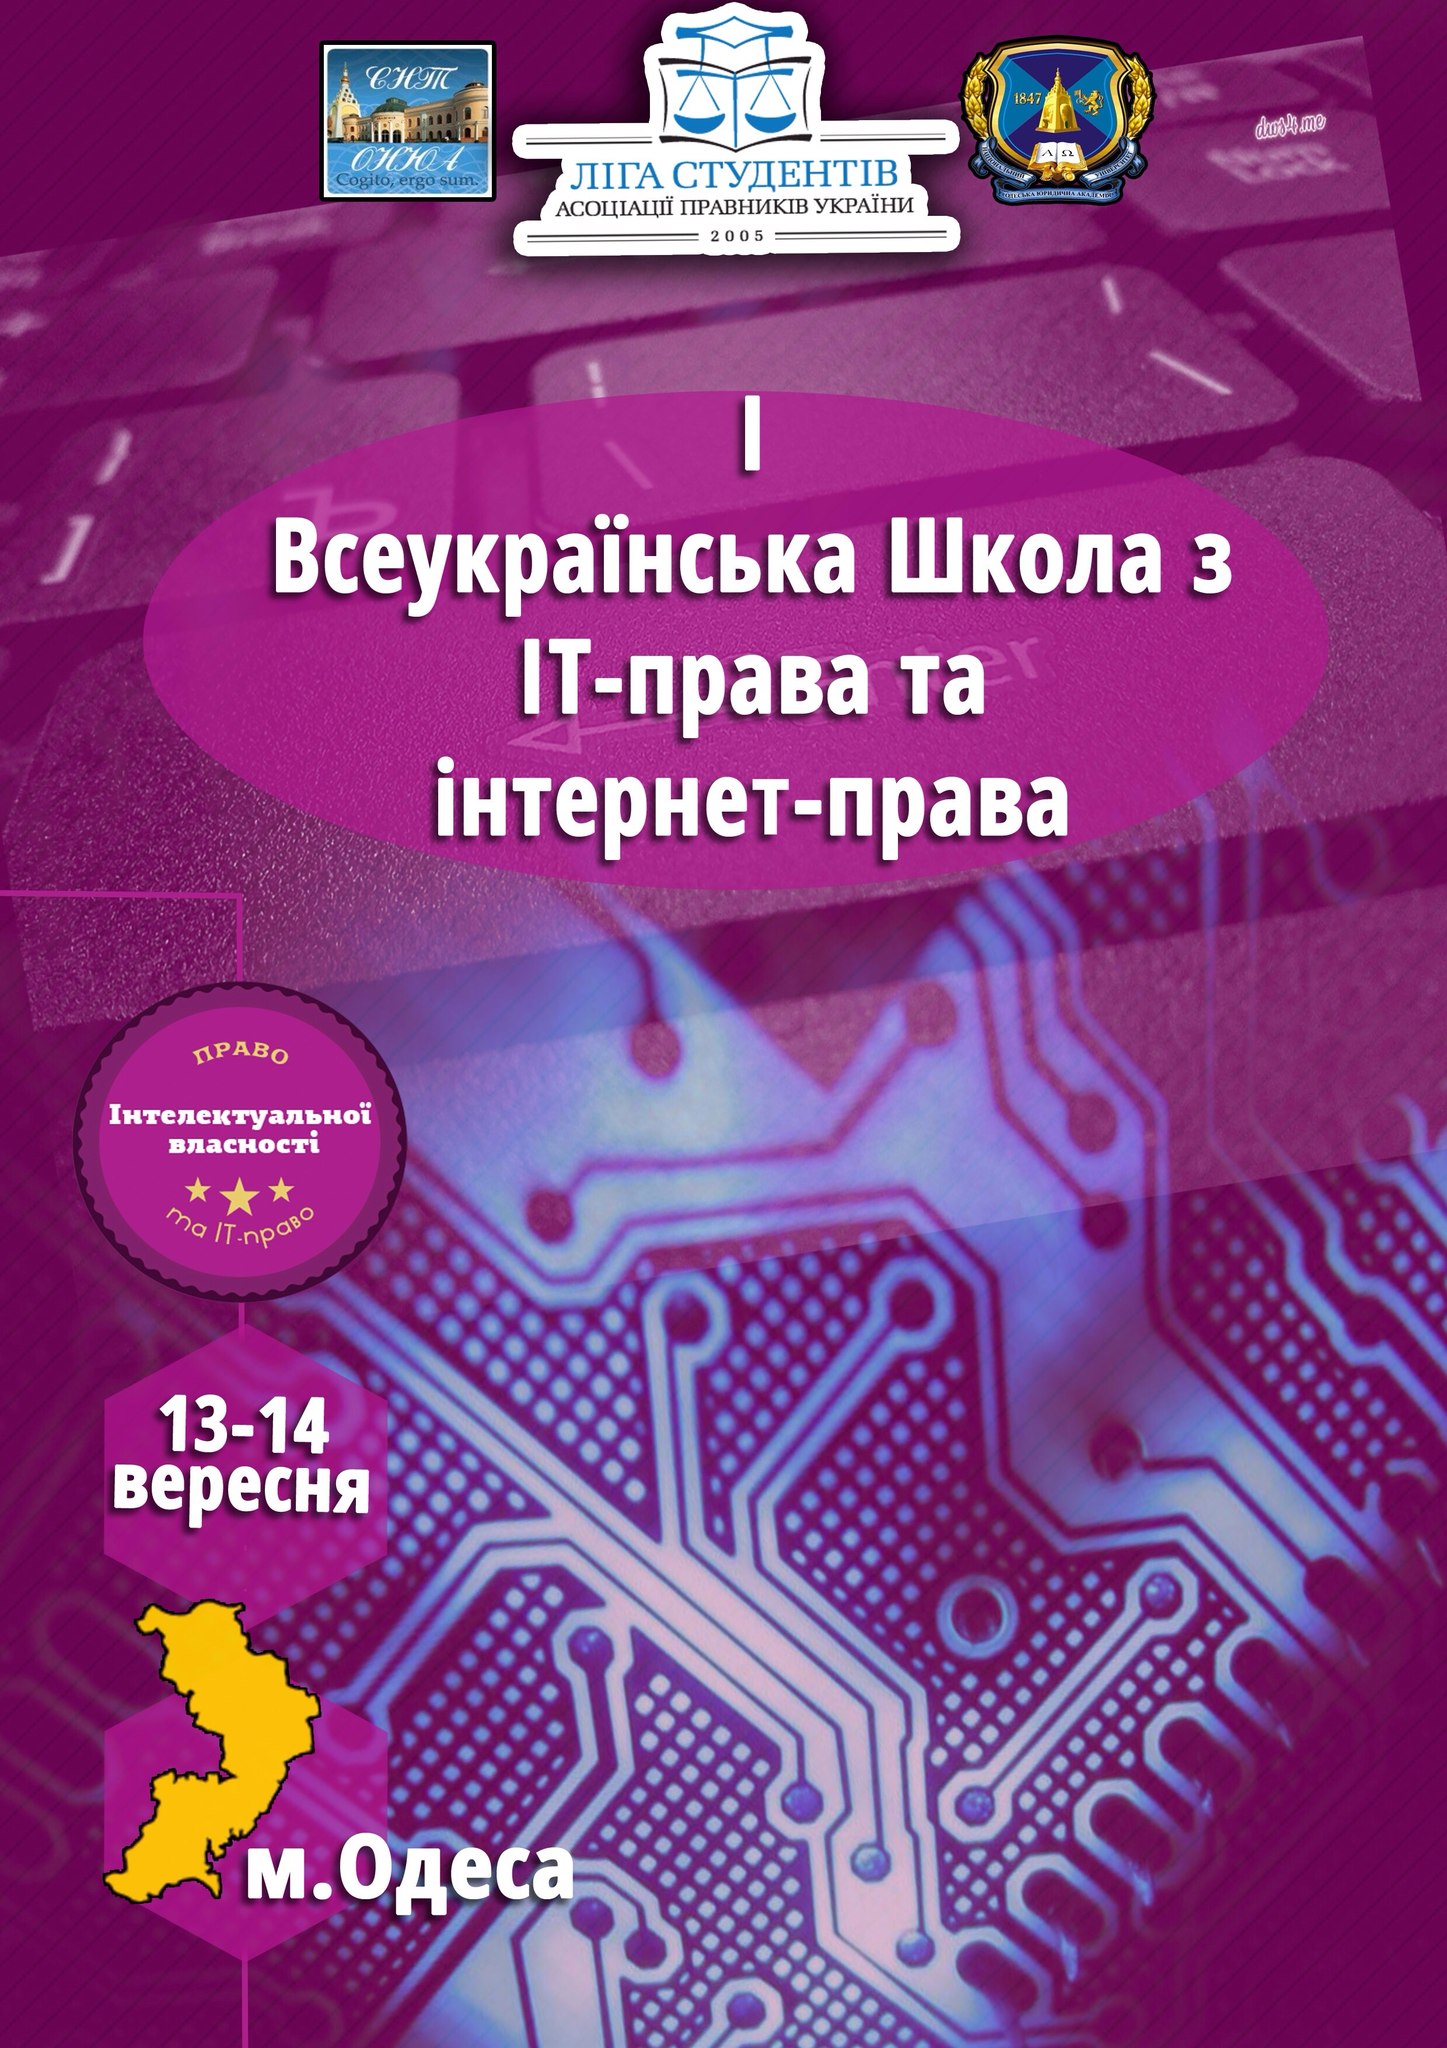 Участь у І Всеукраїнській школі з IT-права та Інтернет-права